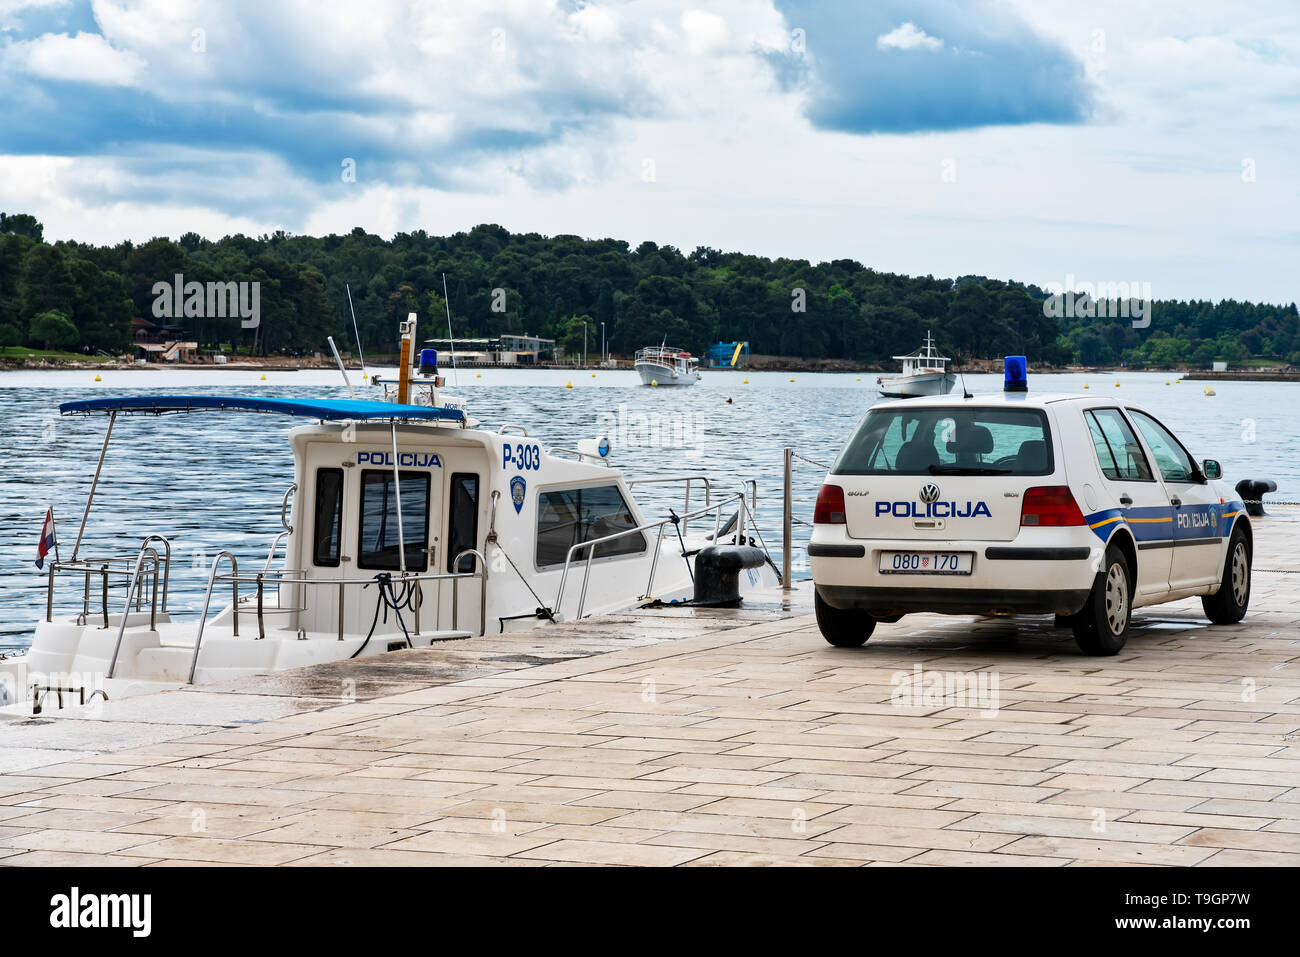 Porec, Kroatien, 04.05.2019: Polizei Boot (Policija) und Polizei Auto, auch bekannt als Hrvatska Policija oder MUP, in den Hafen von Porec geparkt Stockfoto